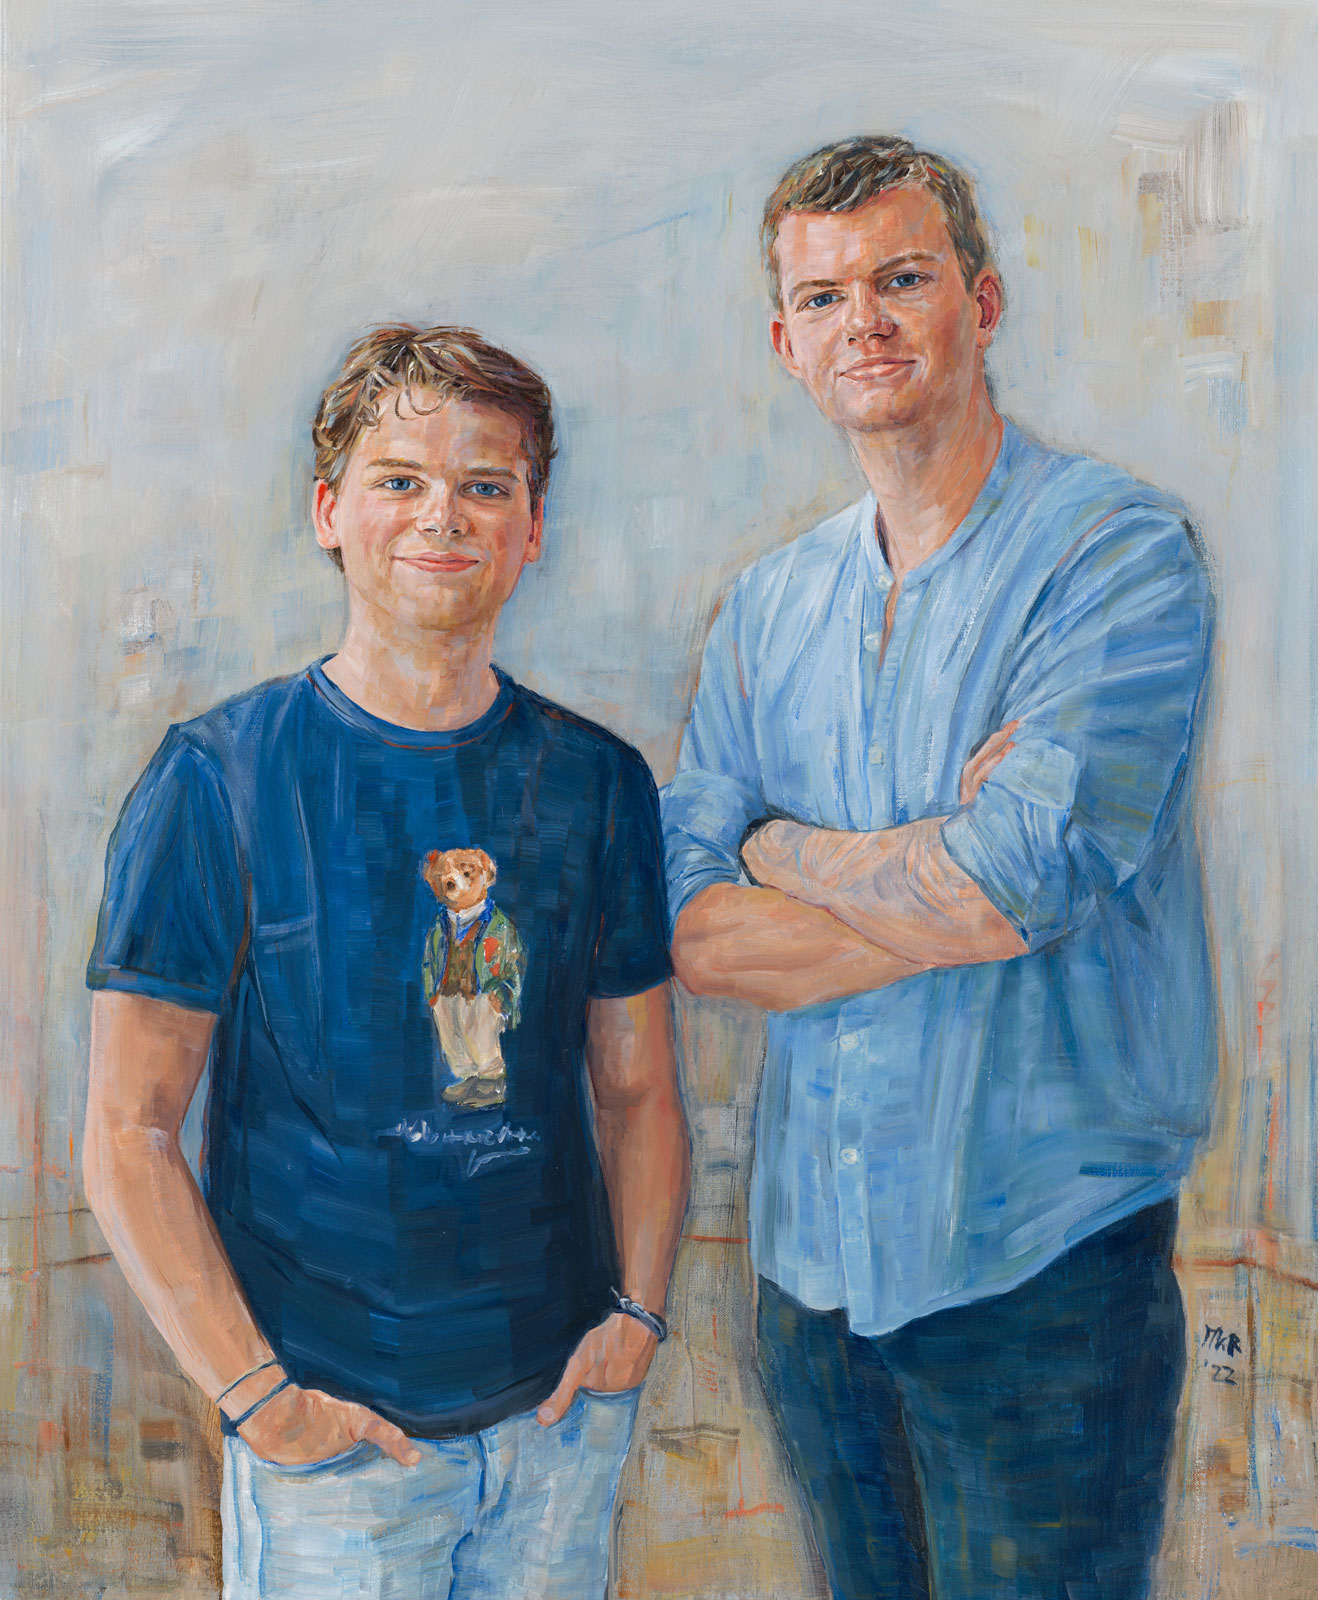 Portretschilderij in olieverf van twee broers.